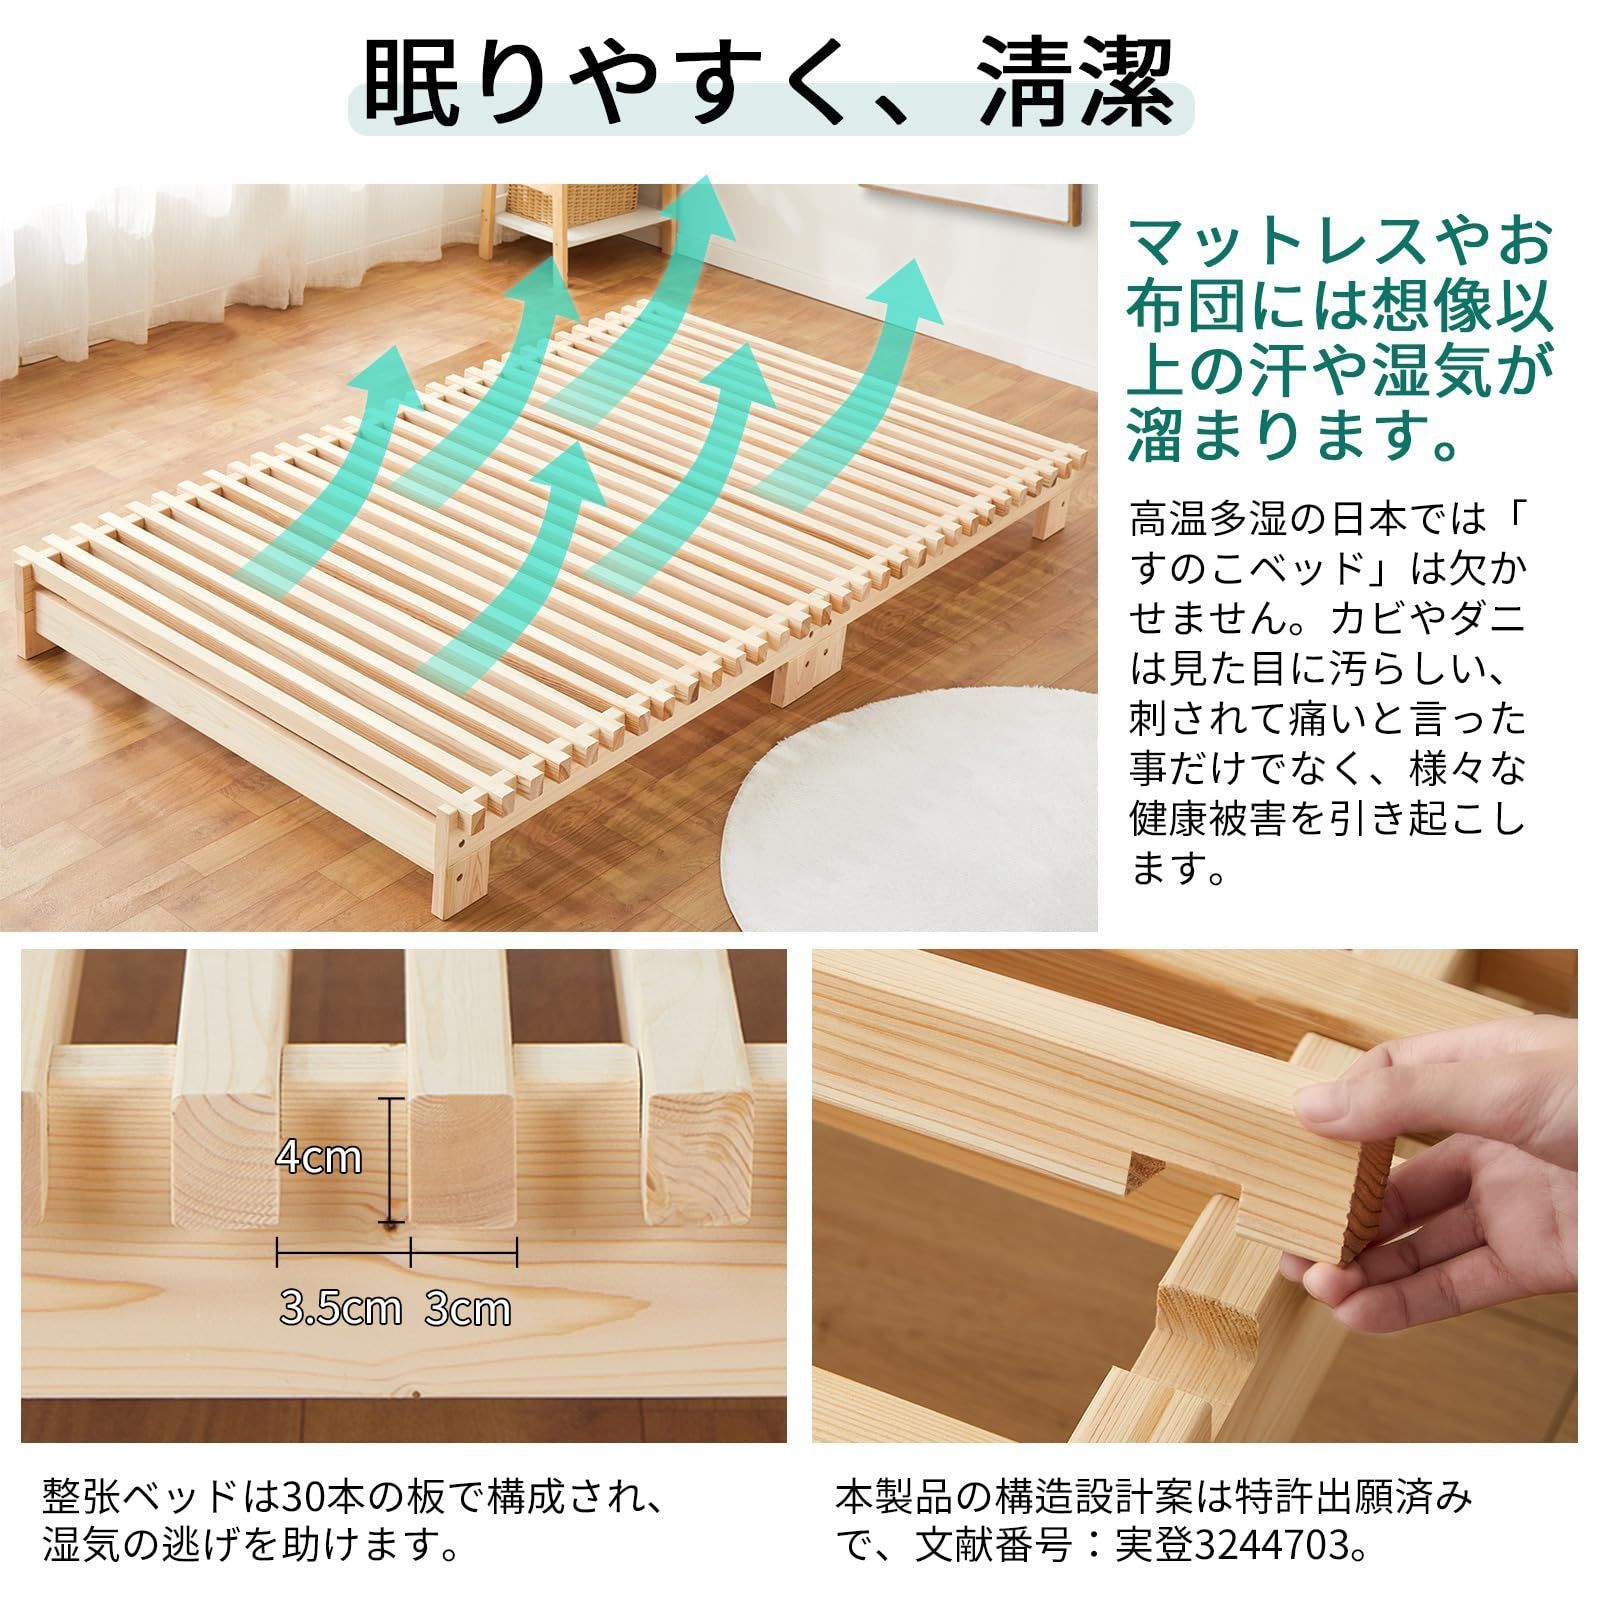 数量限定】セミダブル 日本特許デザイン スノコベッド すのこベッド ...